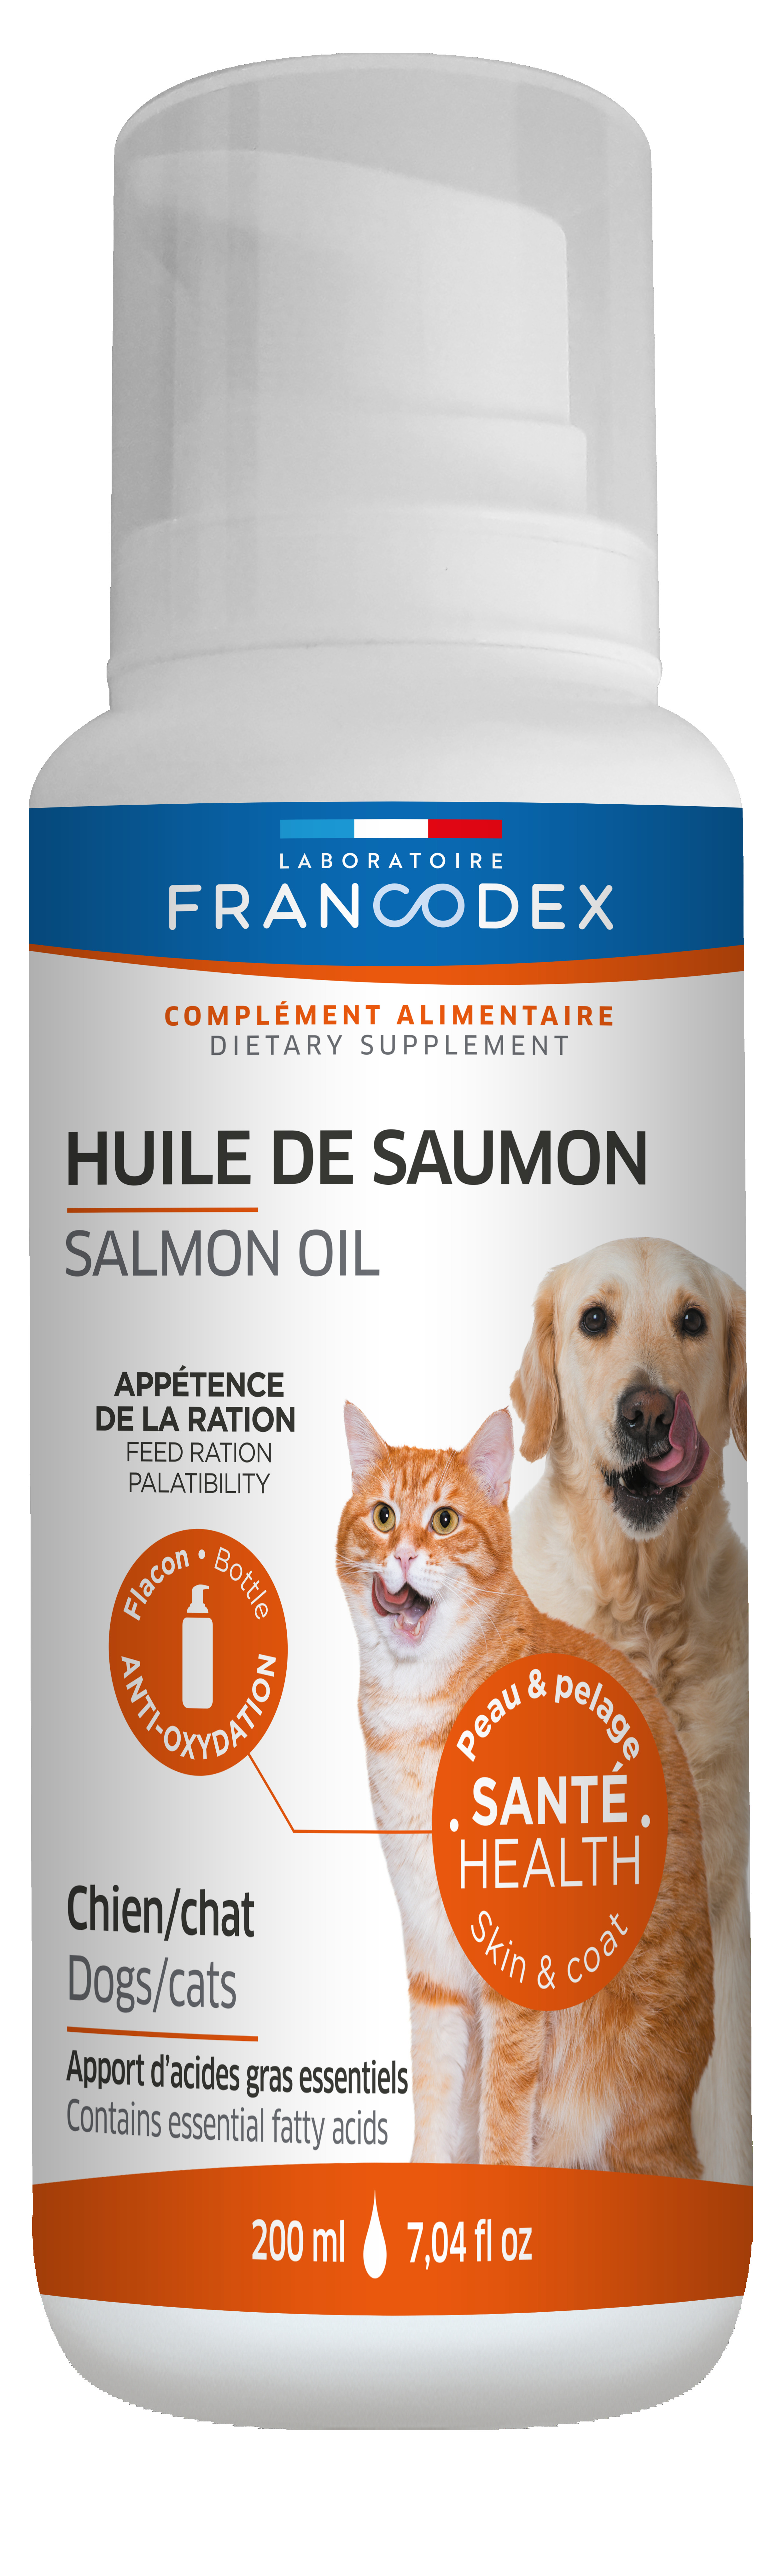 Complément alimentaire pour chien et chat huile de saumon Nobby